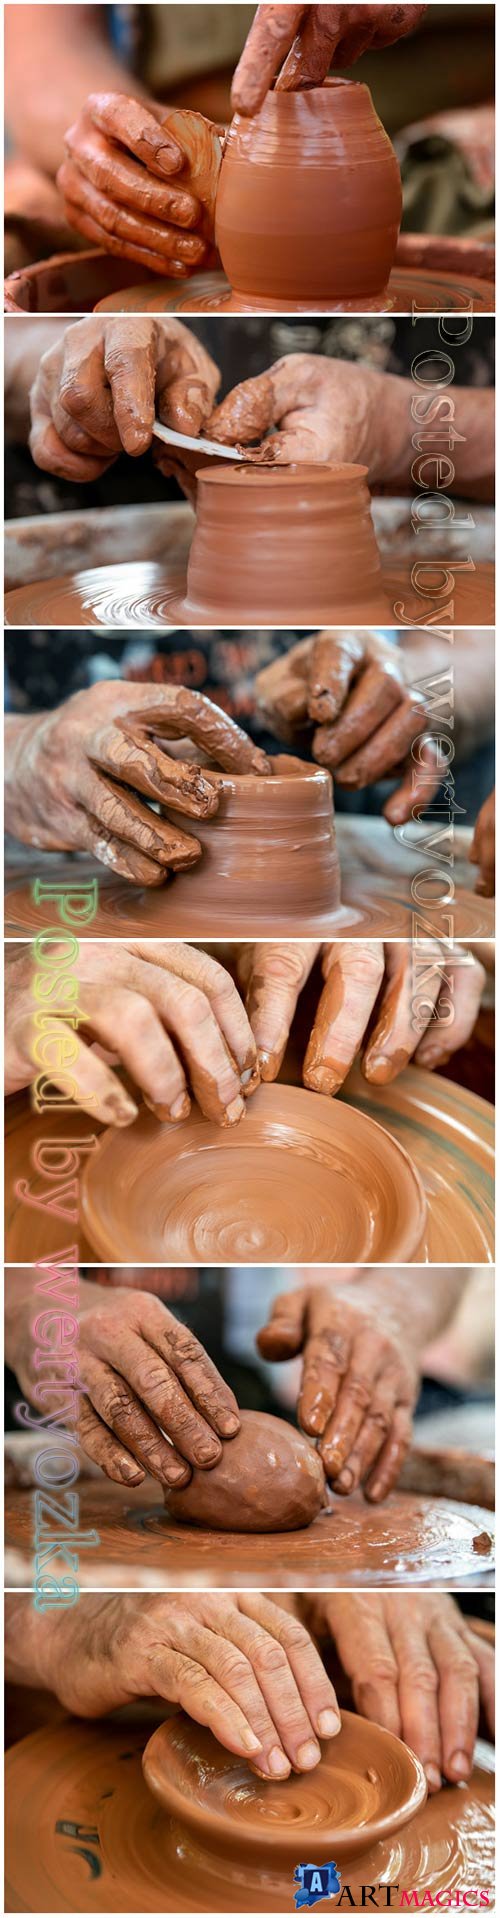 Beautiful pottery art stock photo